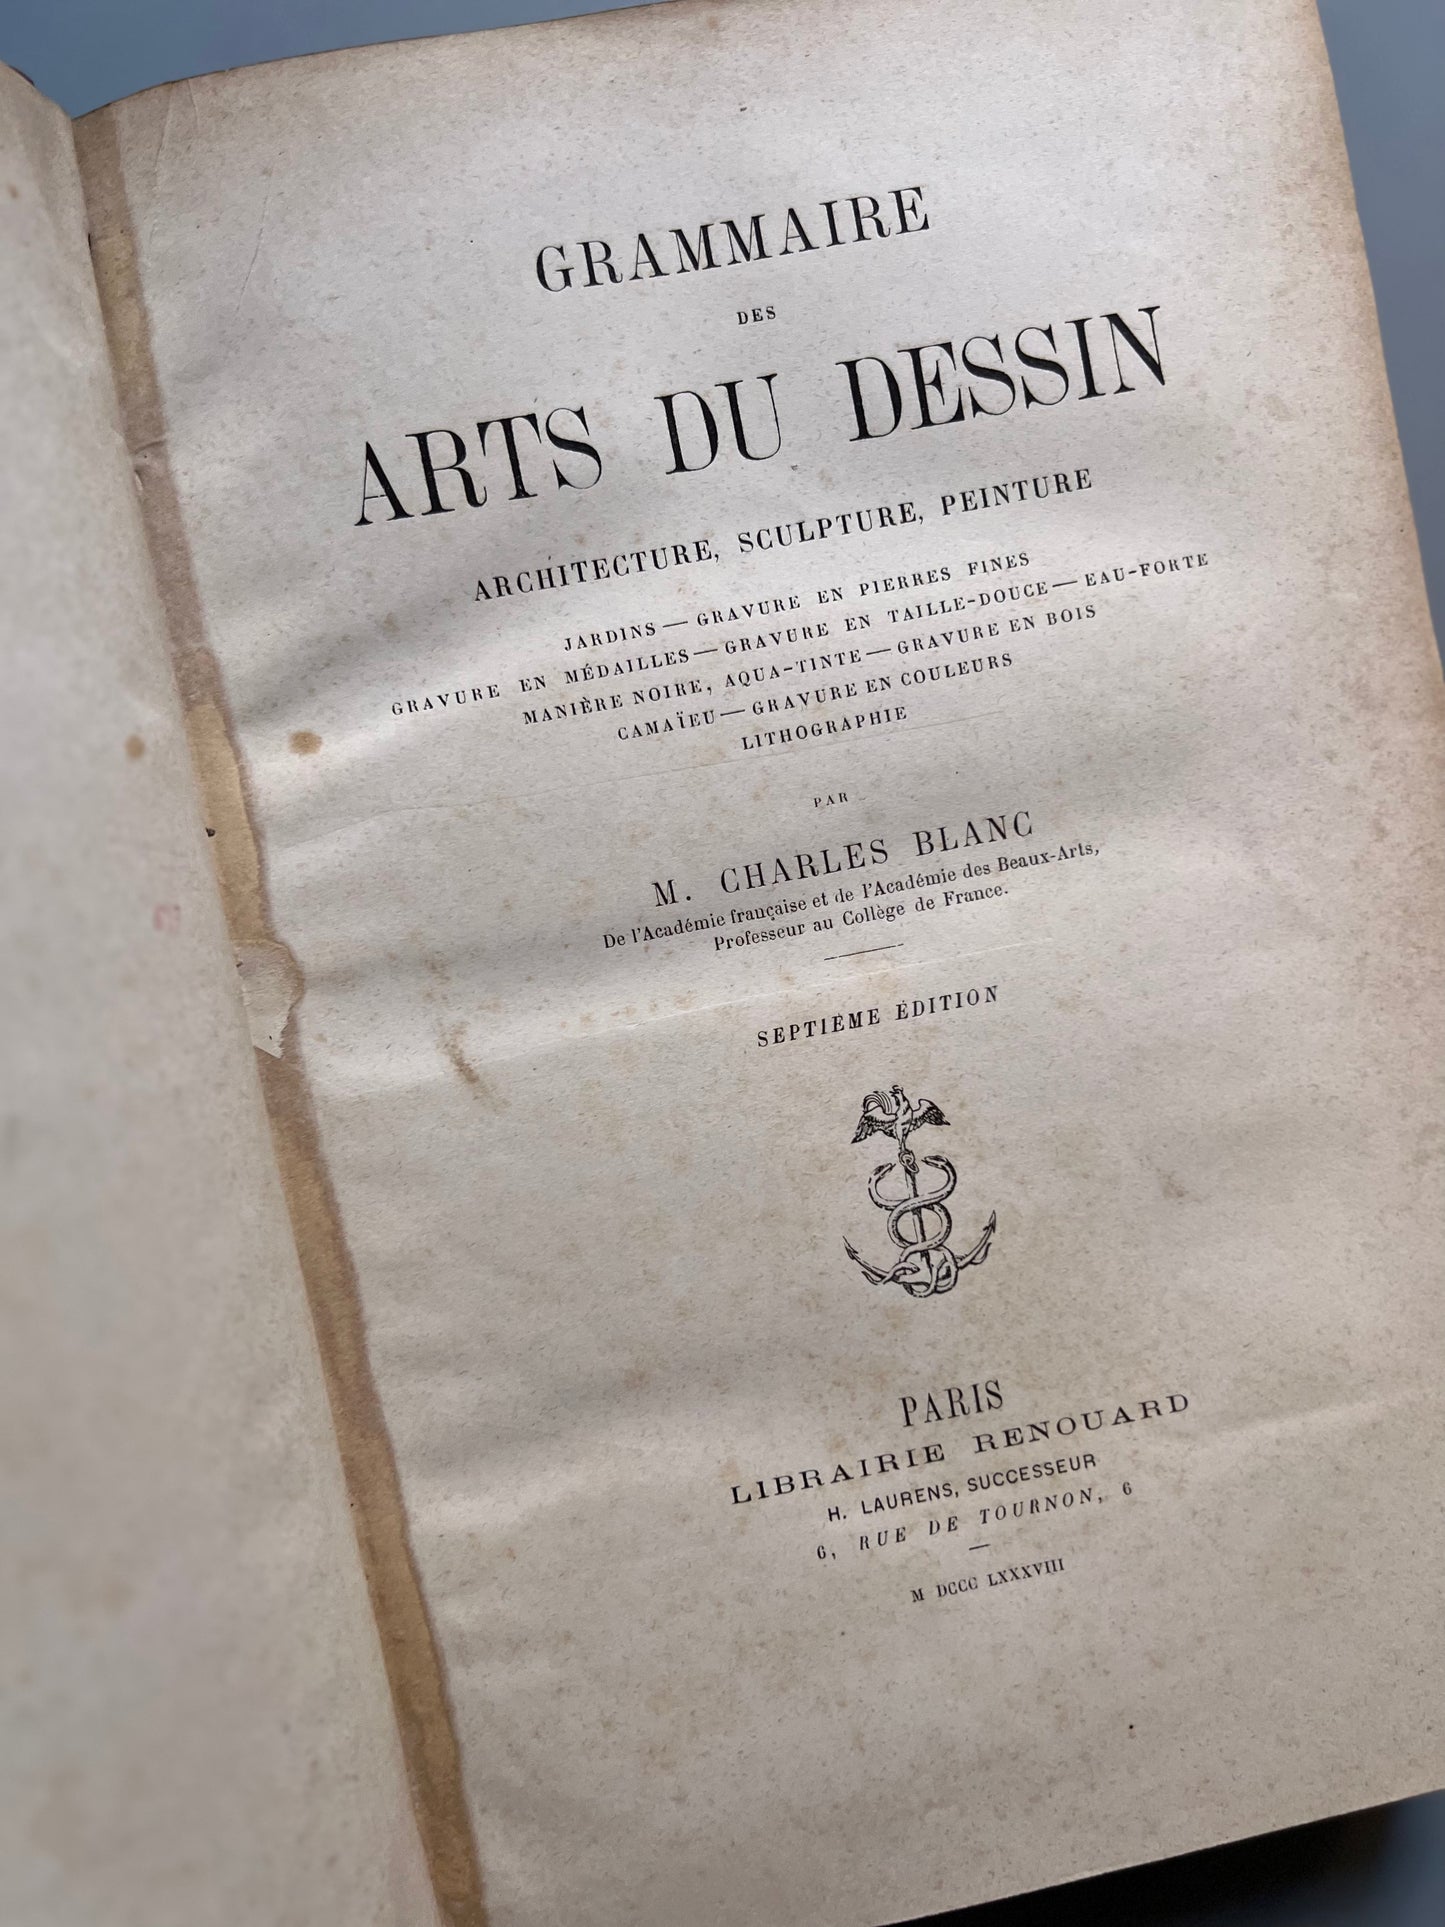 Grammaire des arts du dessin, M. Charles Blanc - Libraire Renouard, 1888